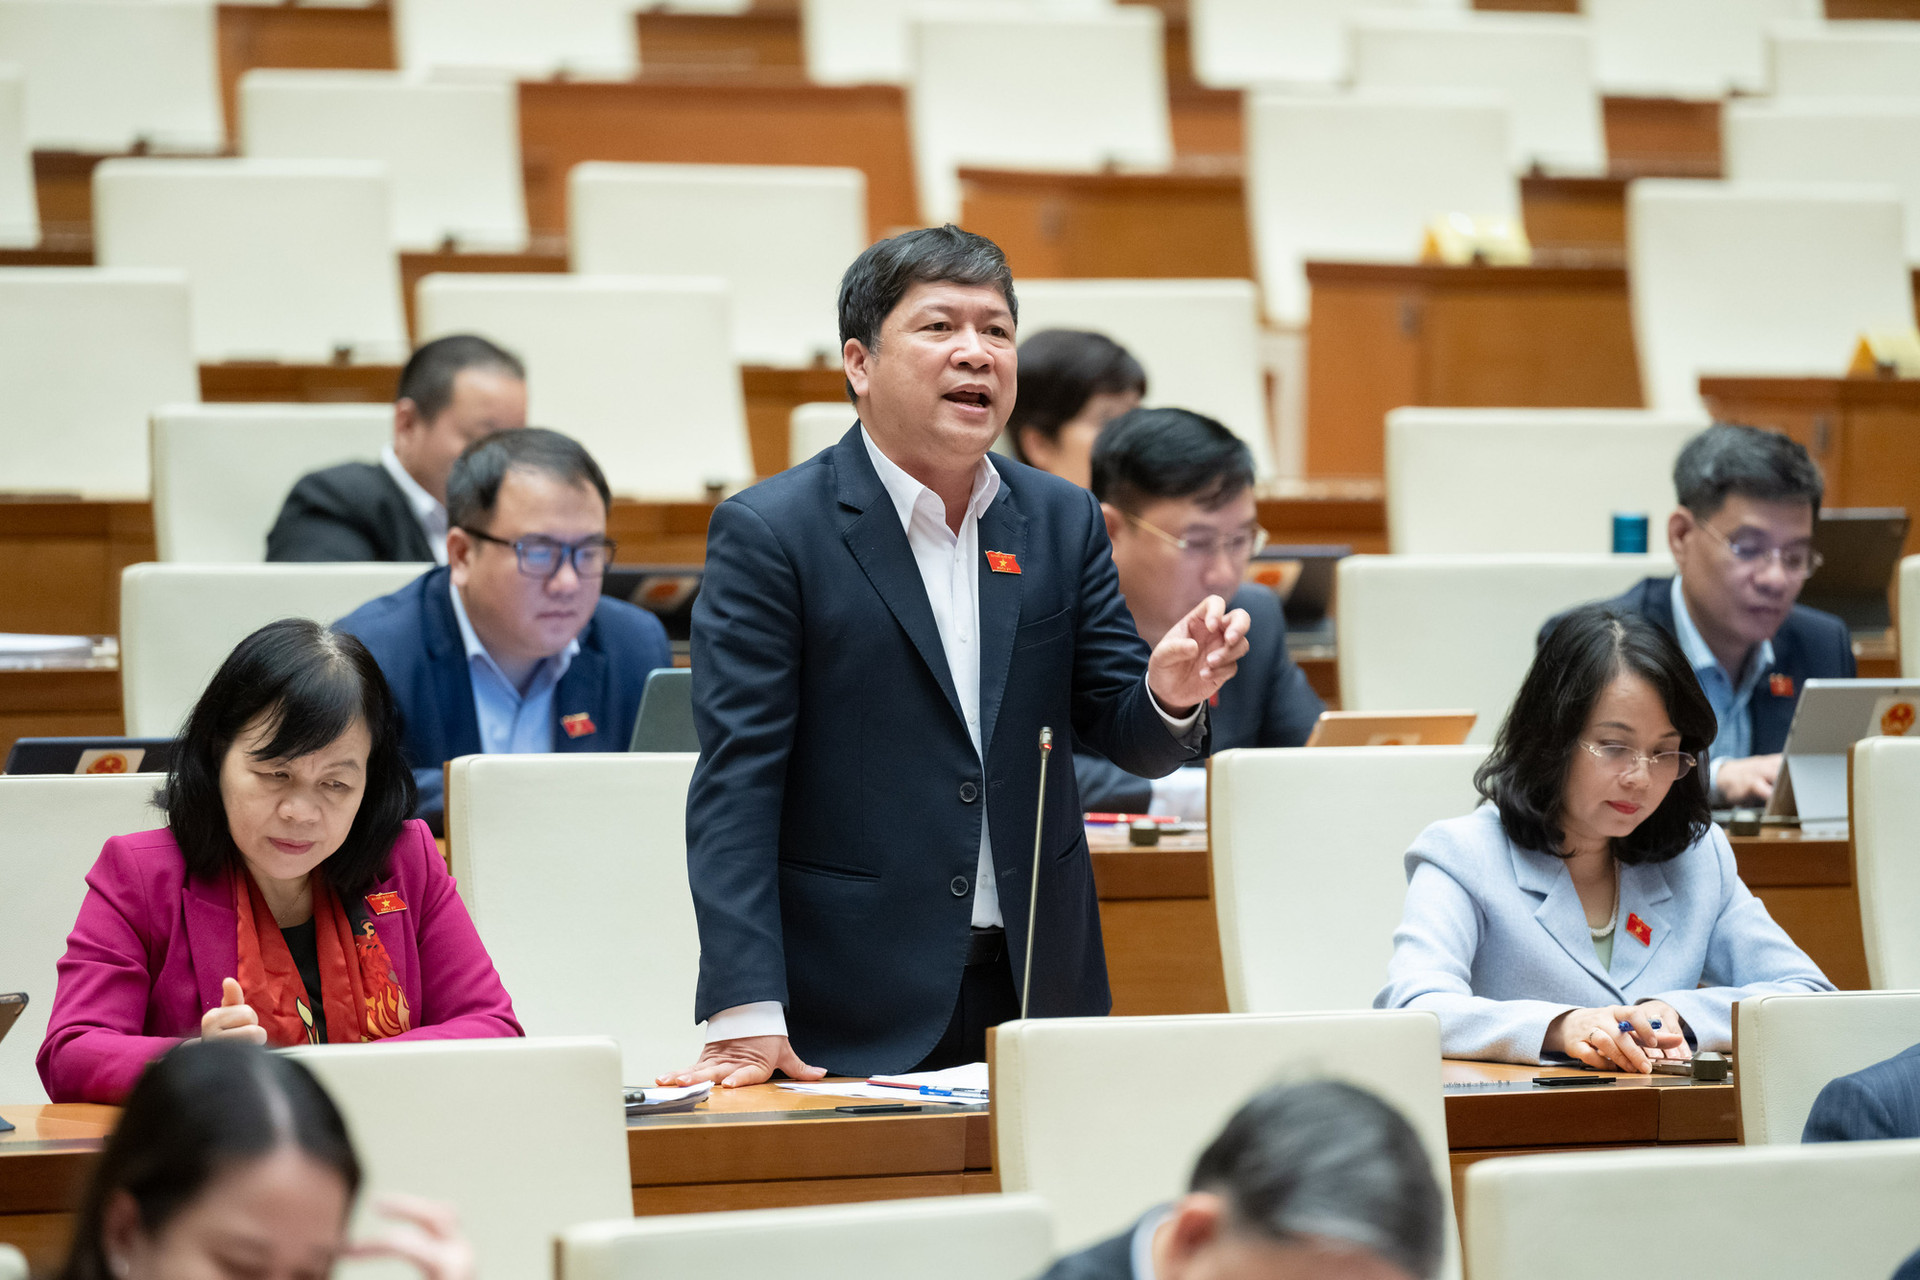 Đại biểu Tạ Văn Hạ - Đoàn ĐBQH tỉnh Quảng Nam tranh luận